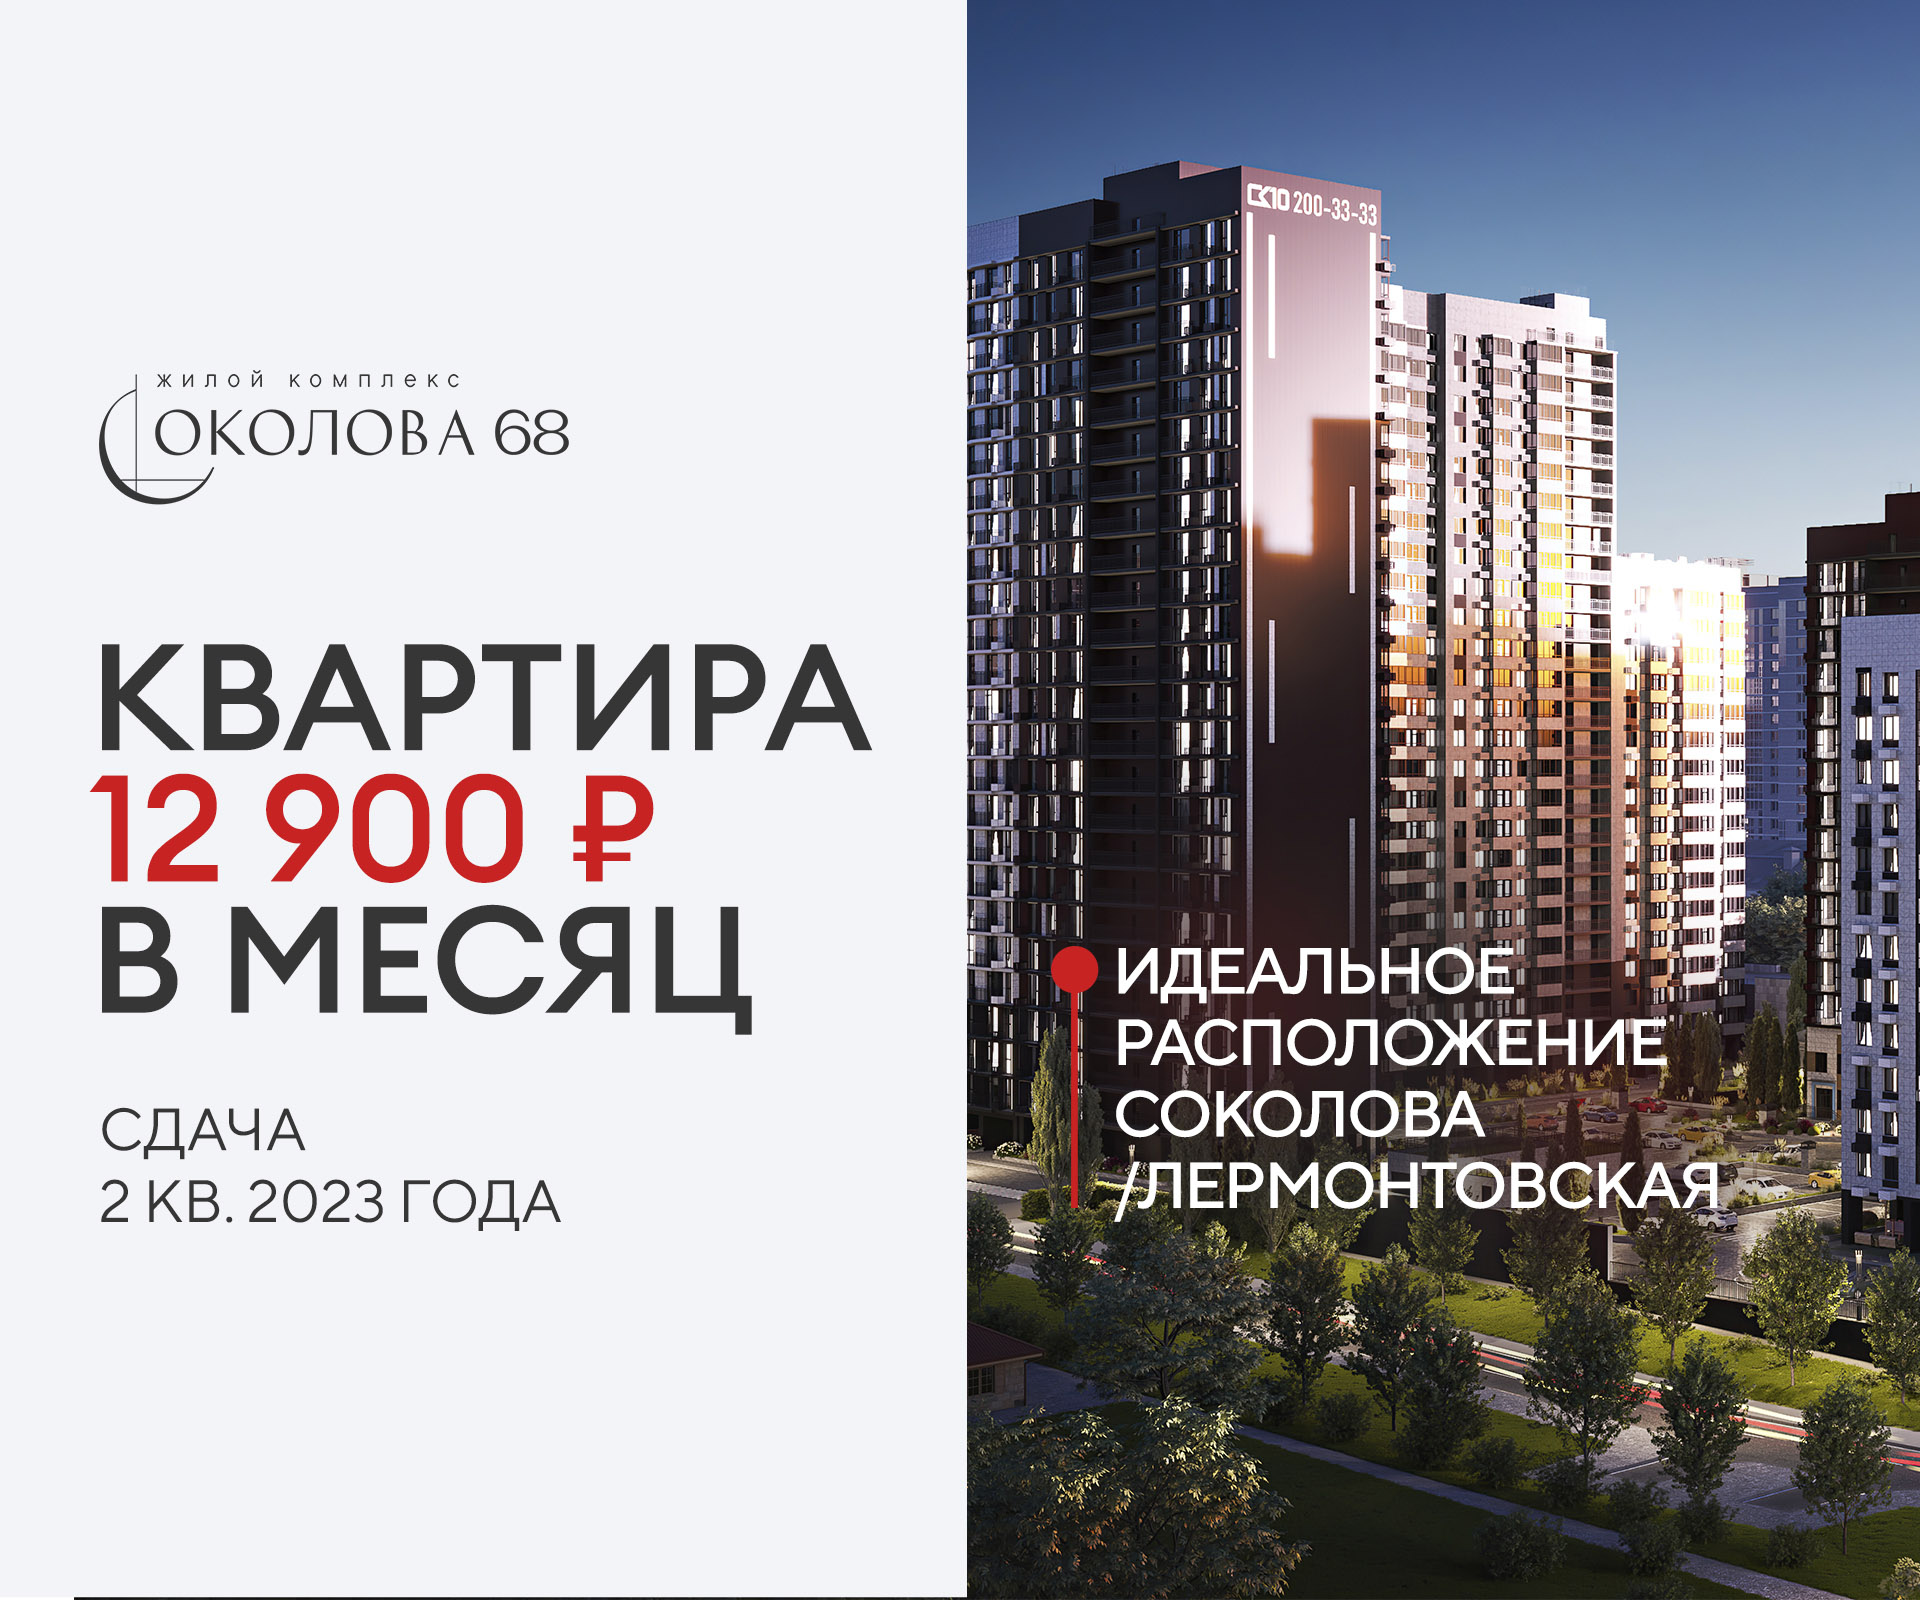 12 900 руб. в месяц за квартиру с лучшим расположением в городе!